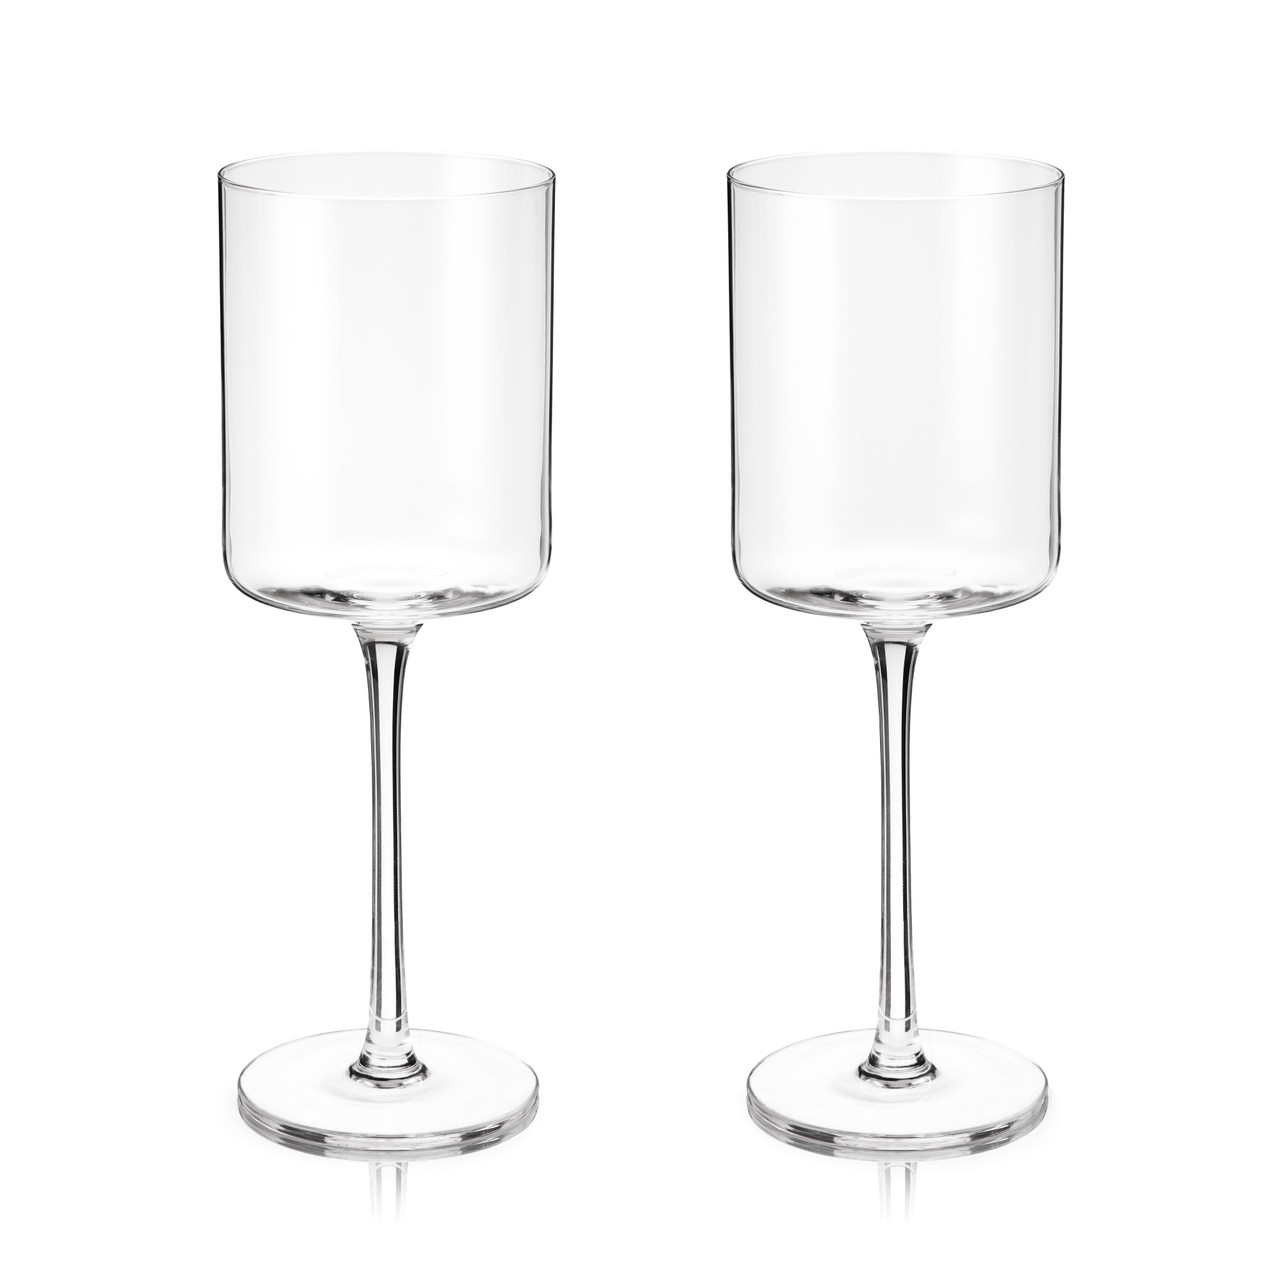 Laurel White Wine Glasses by Viski